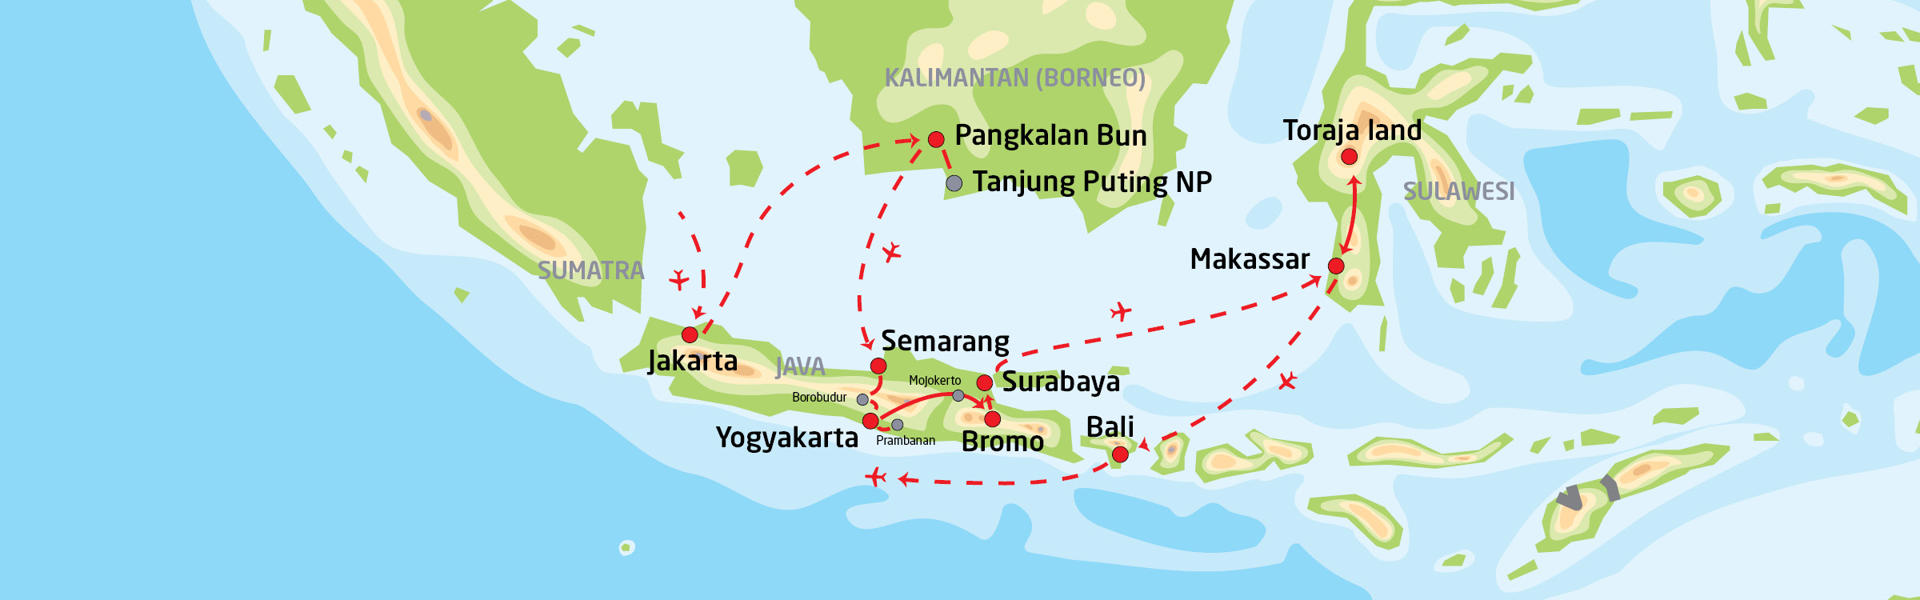 Indonesias høydepunkter | Reiserute